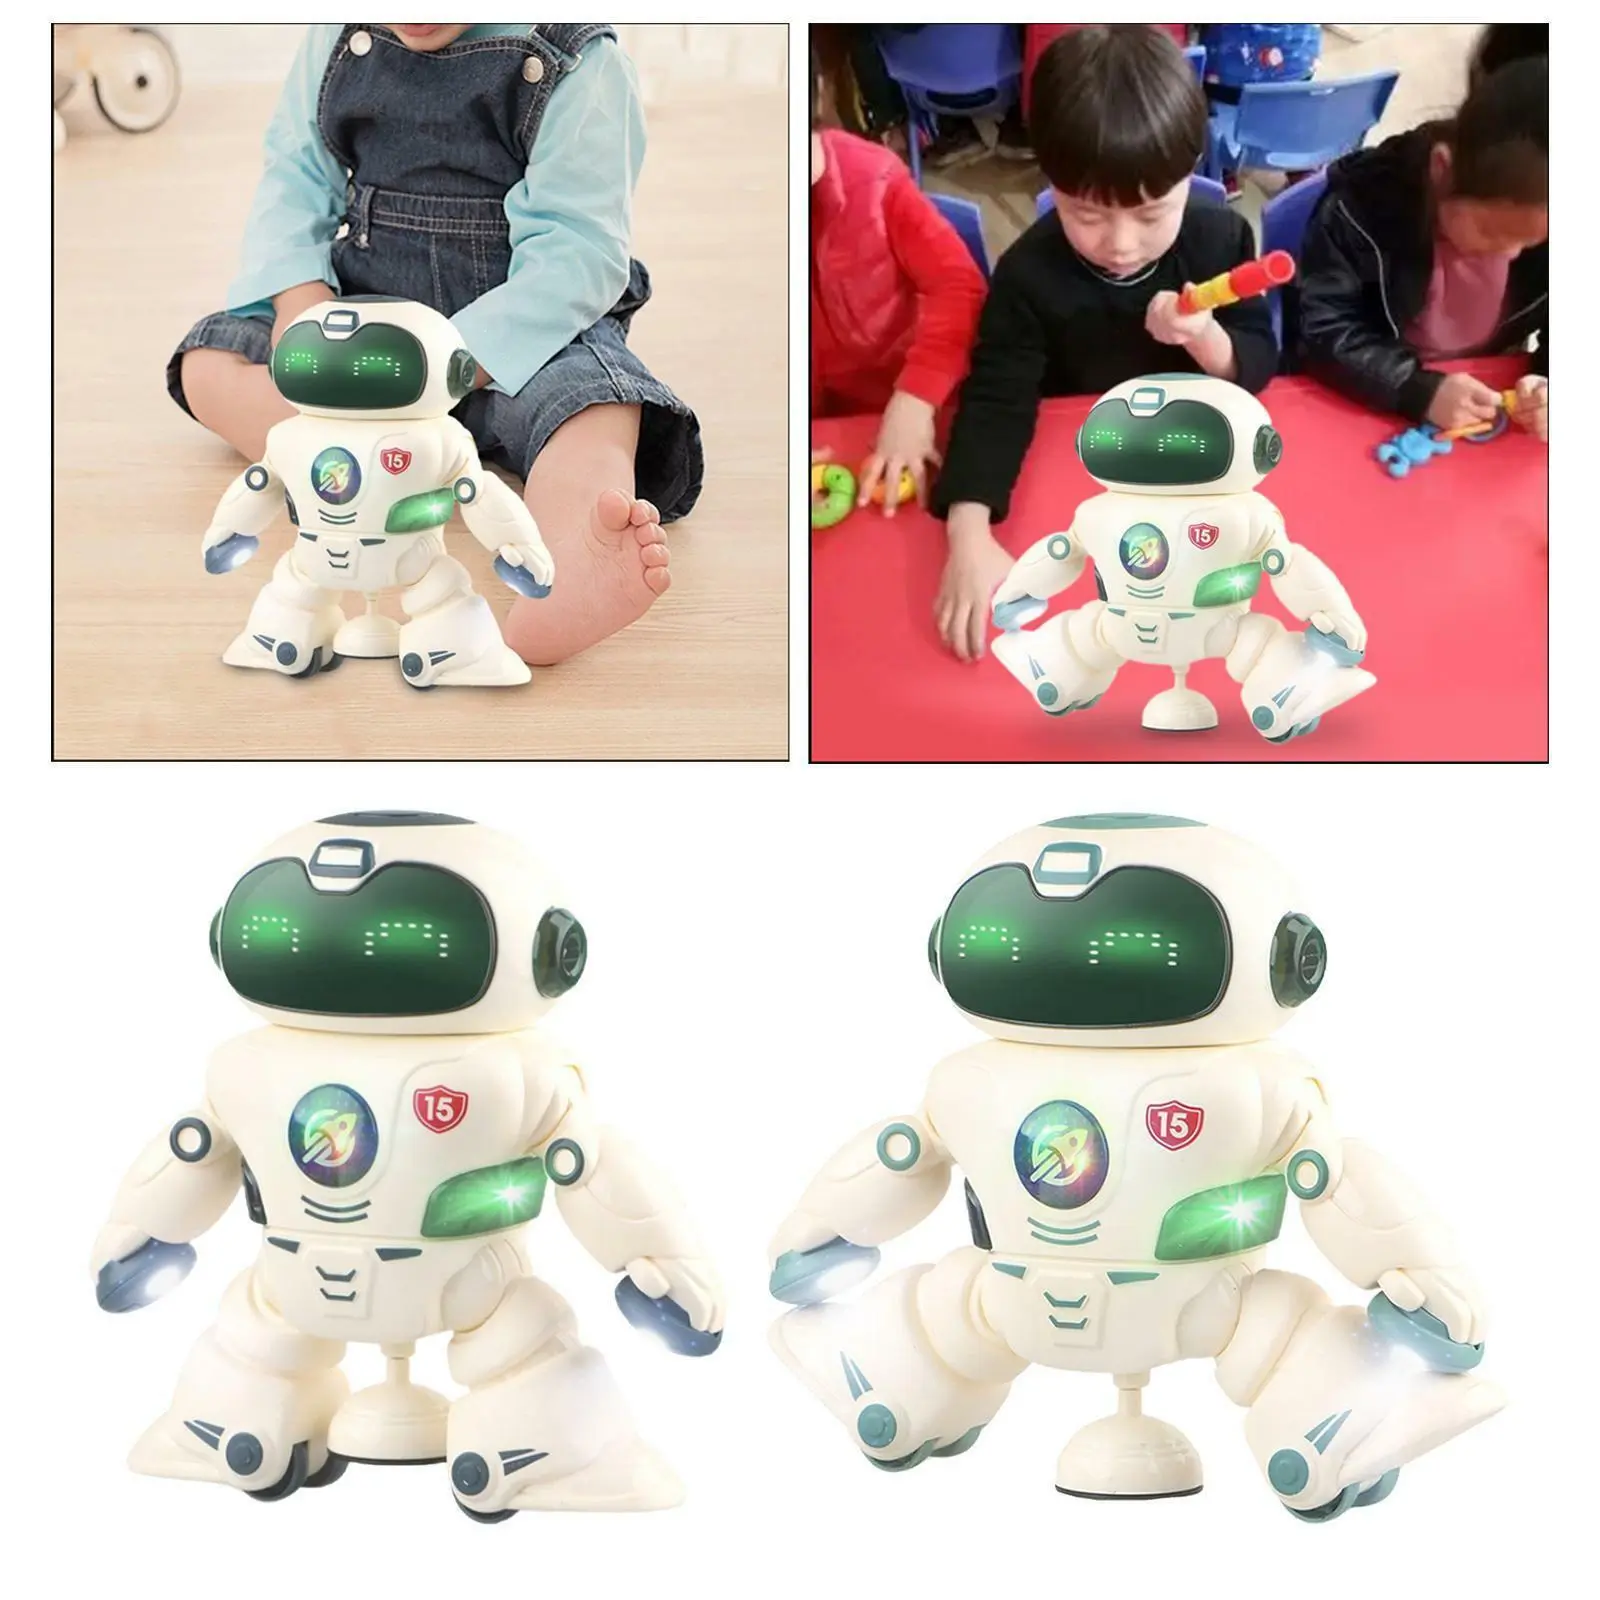 Butwevi Robot de danse électronique jouet Robot bruyant mobile